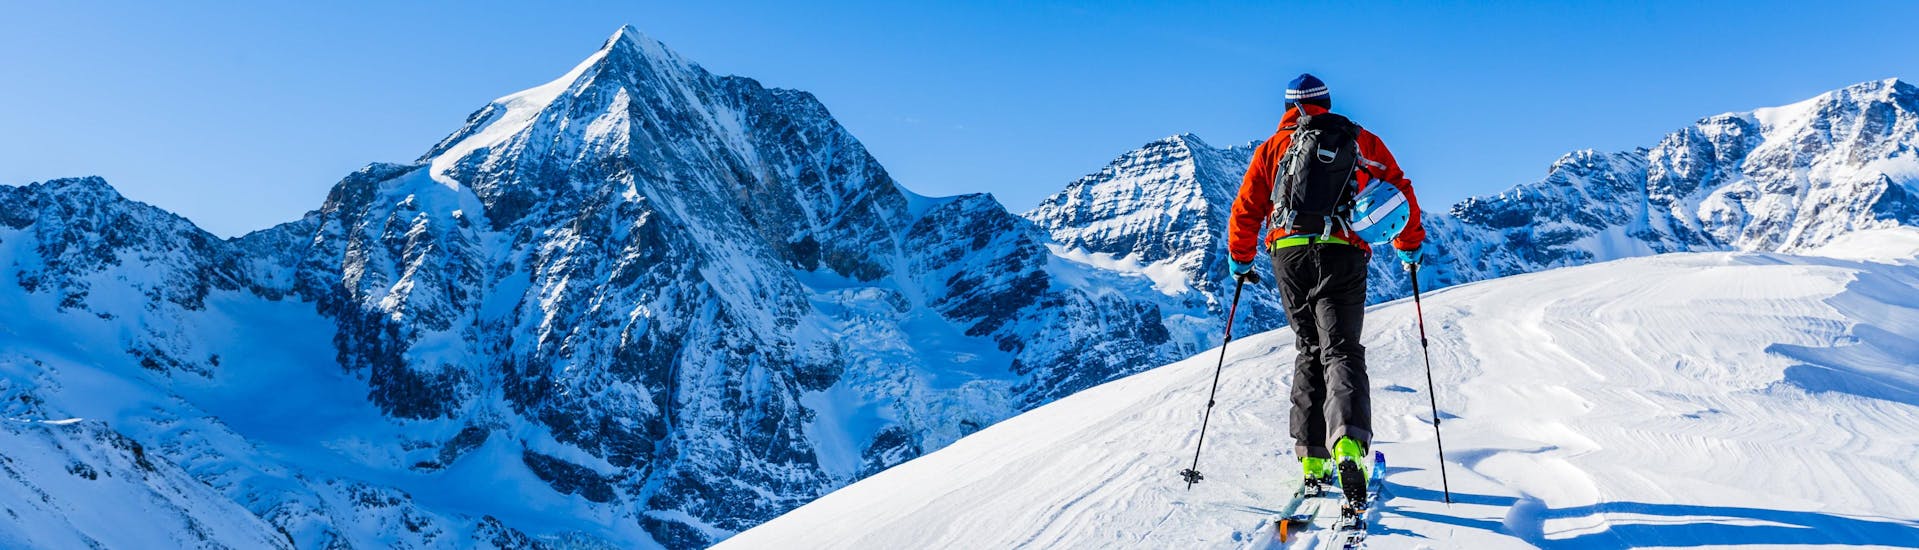 Ein Mann erkundet bei seiner Skitour in Zillertal die verschneite Berglandschaft.